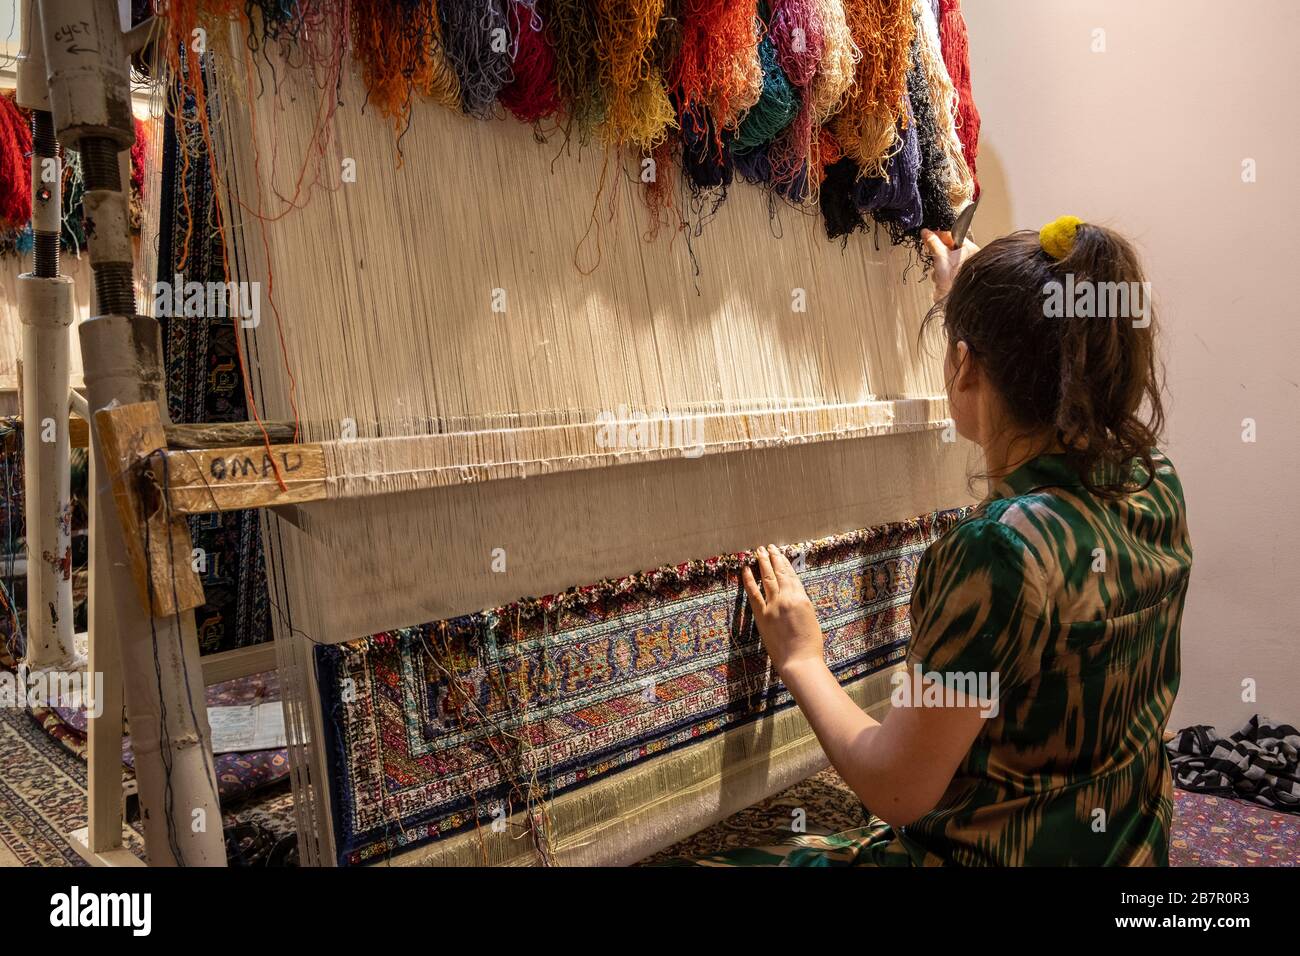 Woman Weaving a Carpet, Bukhara, Uzbekistan Stock Photo